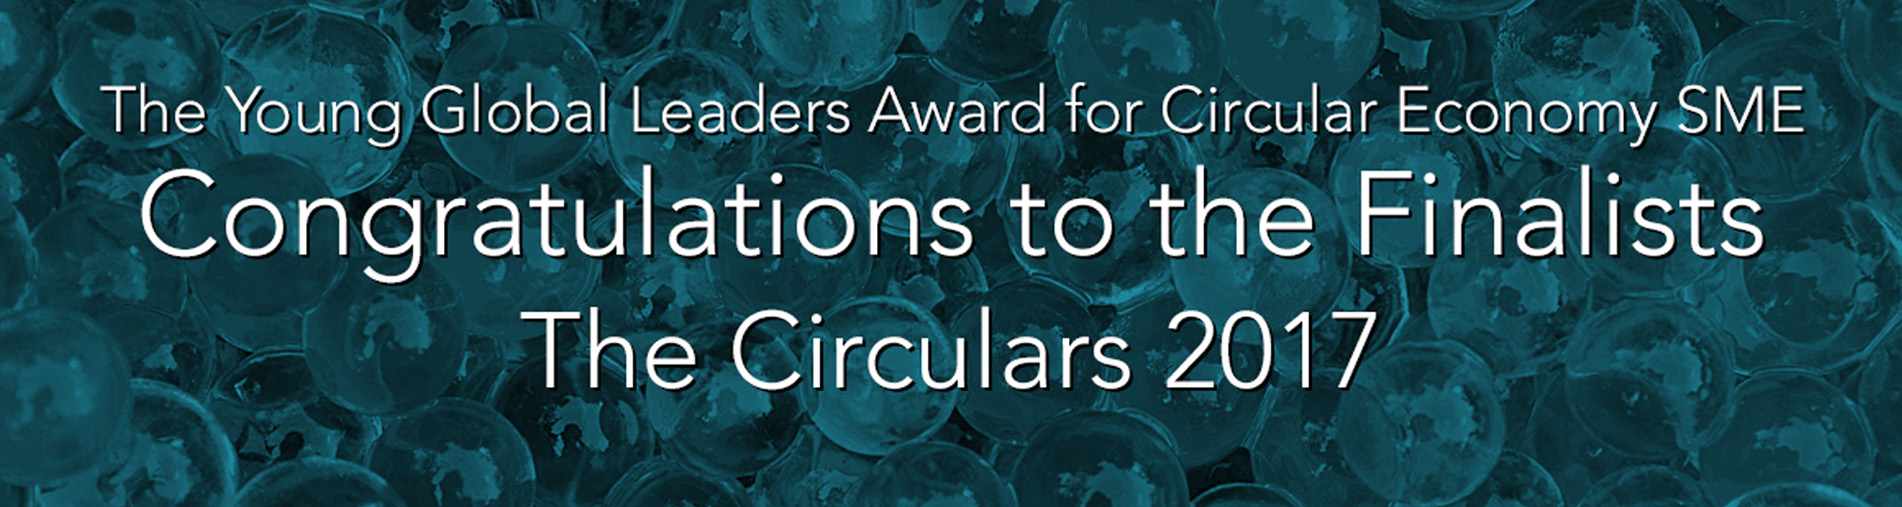 Circular Awards